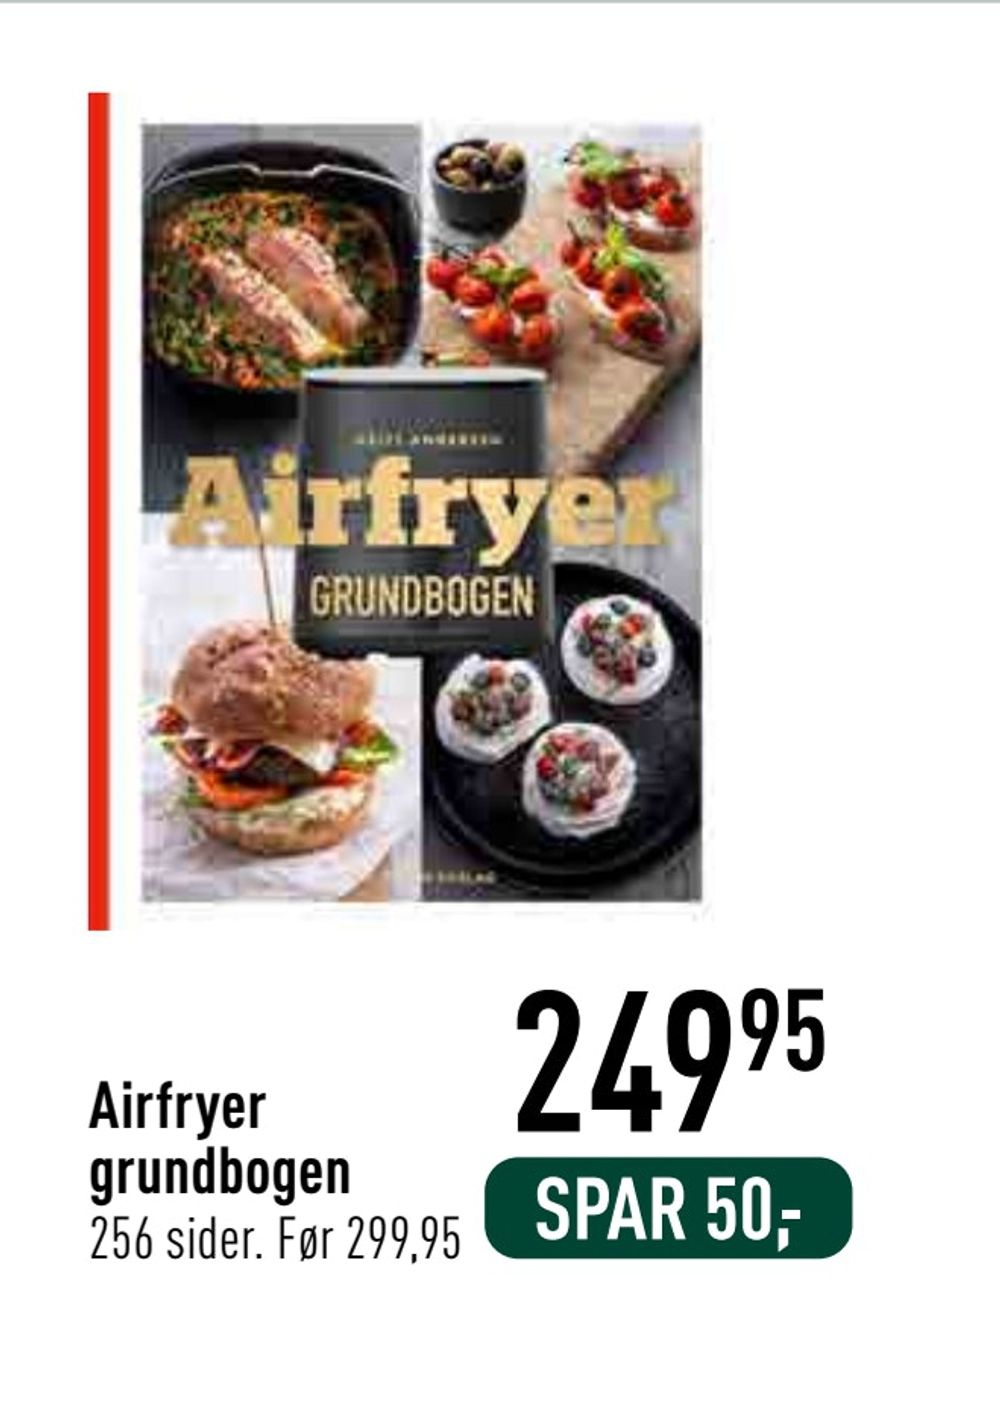 Deals on Airfryer grundbogen from Imerco at 249,95 kr.